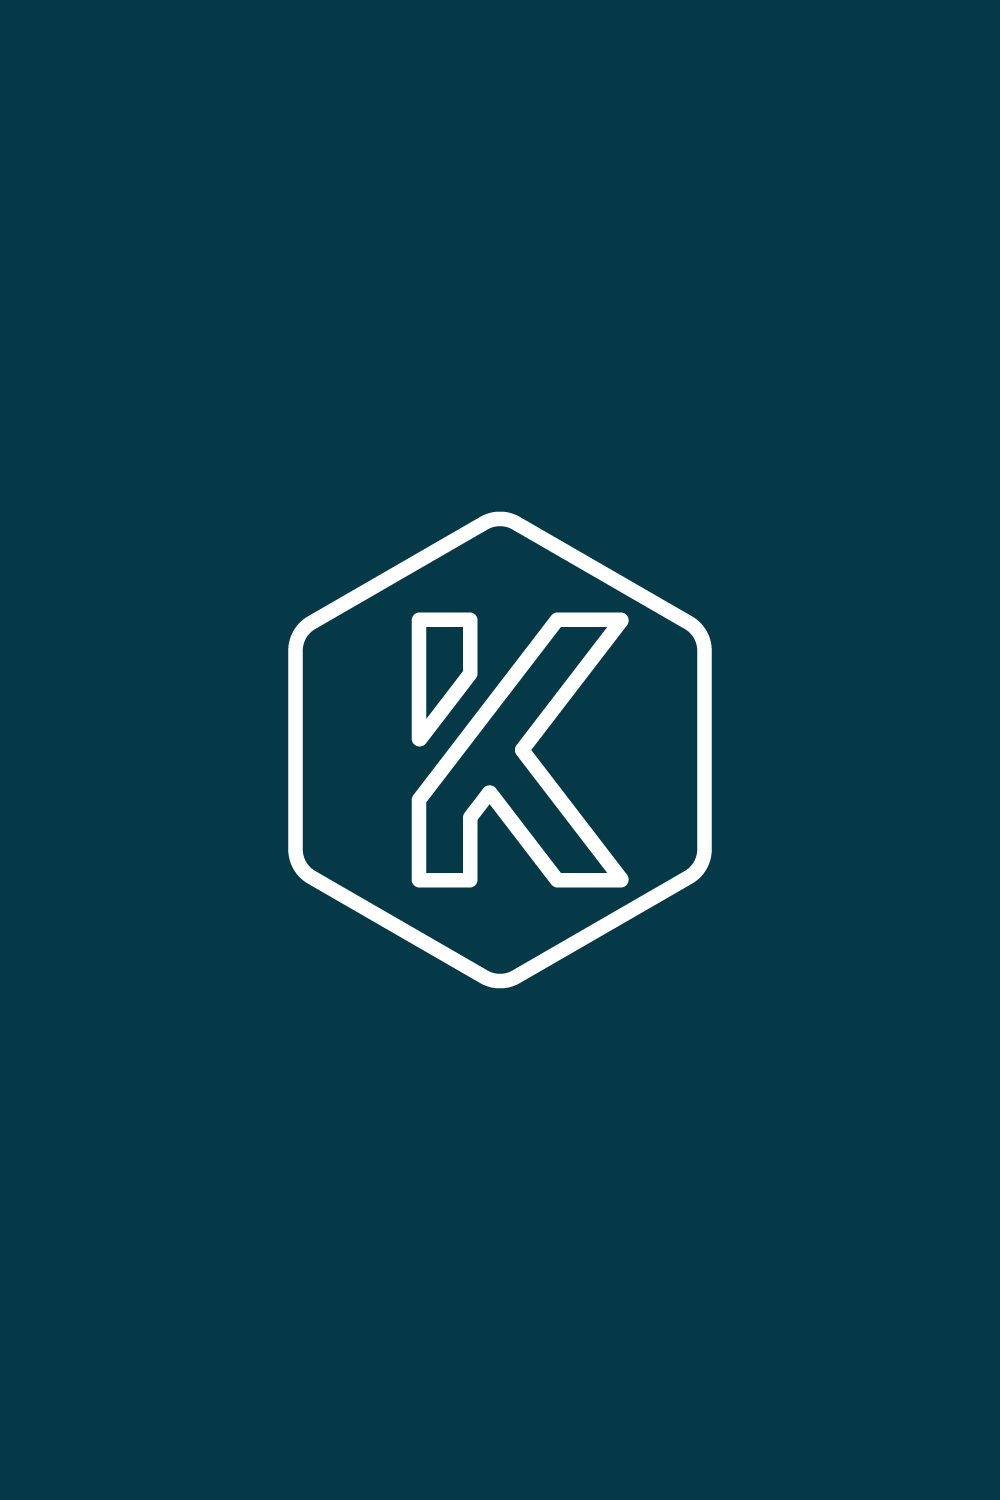 Letter K Logo Design pinterest image.